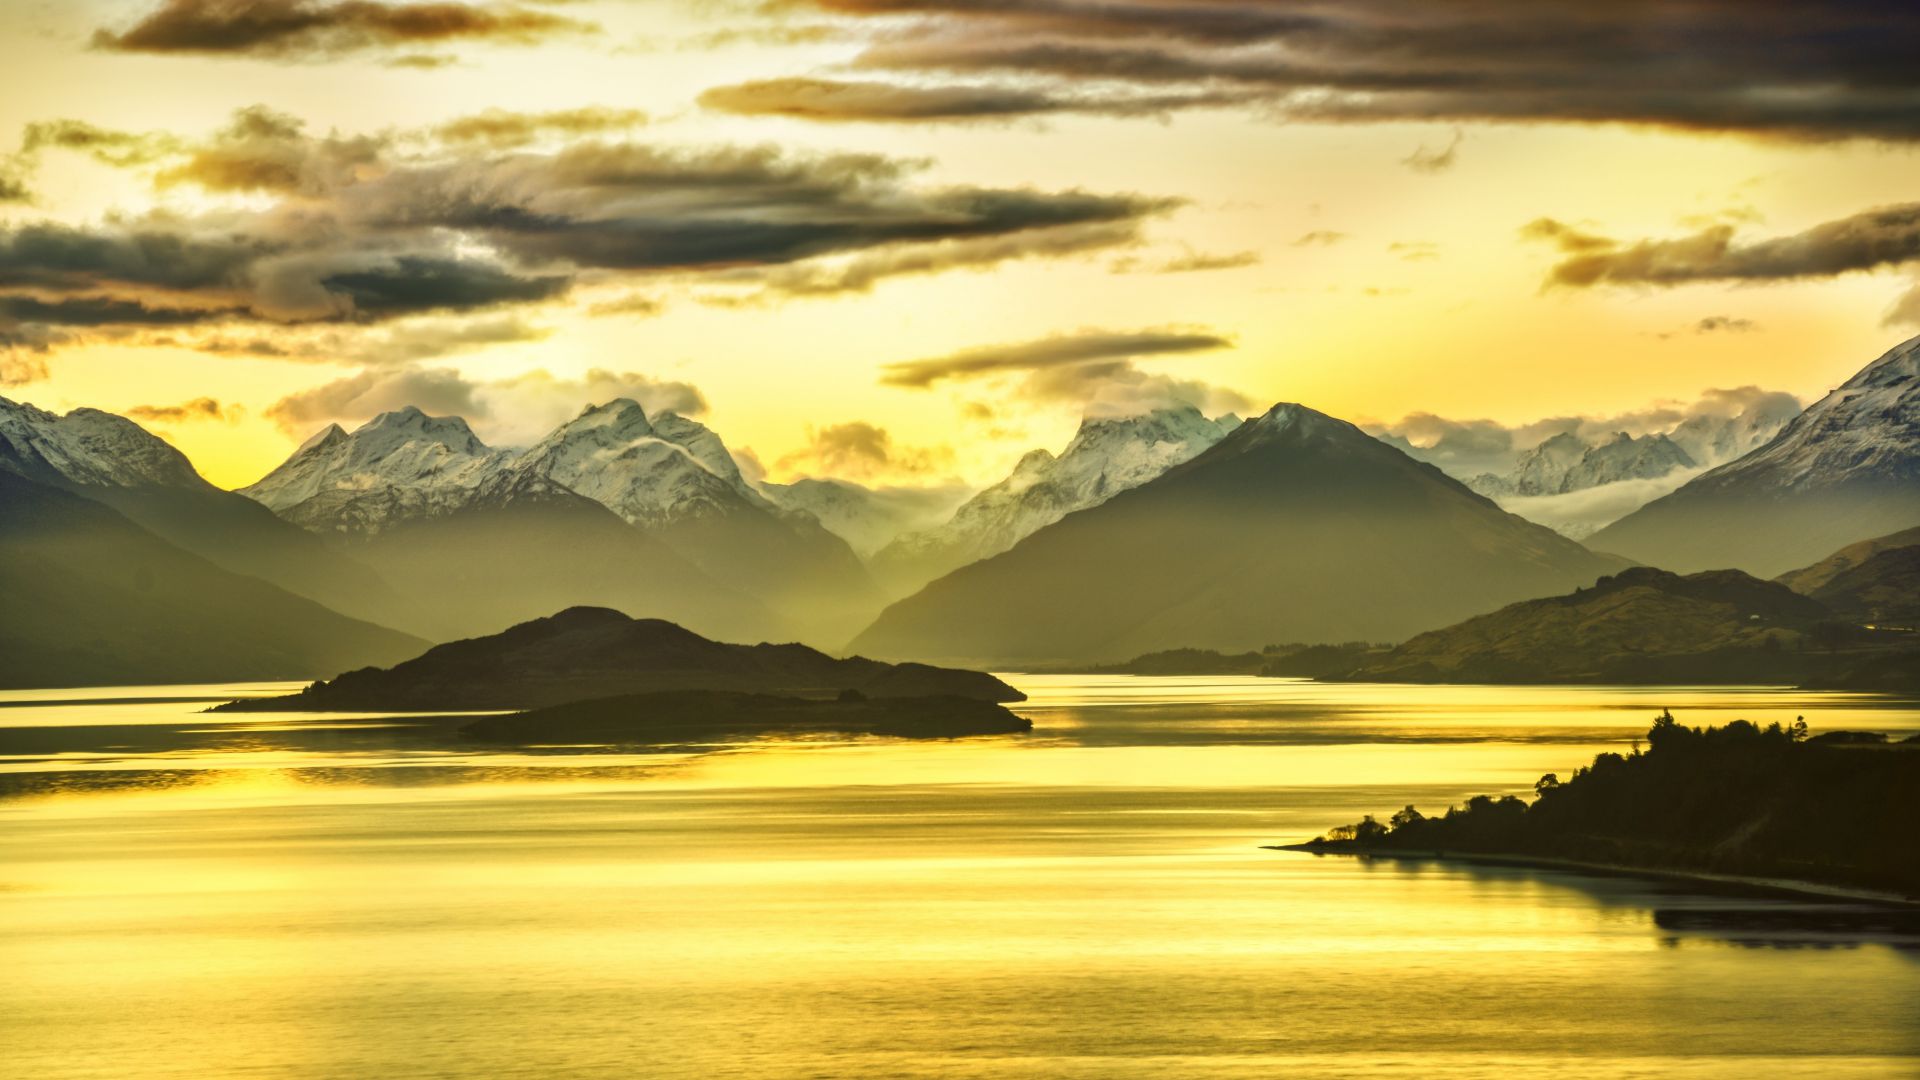 New Zealand, 5k, 4k wallpaper, Mountains, lake, sunset (horizontal)